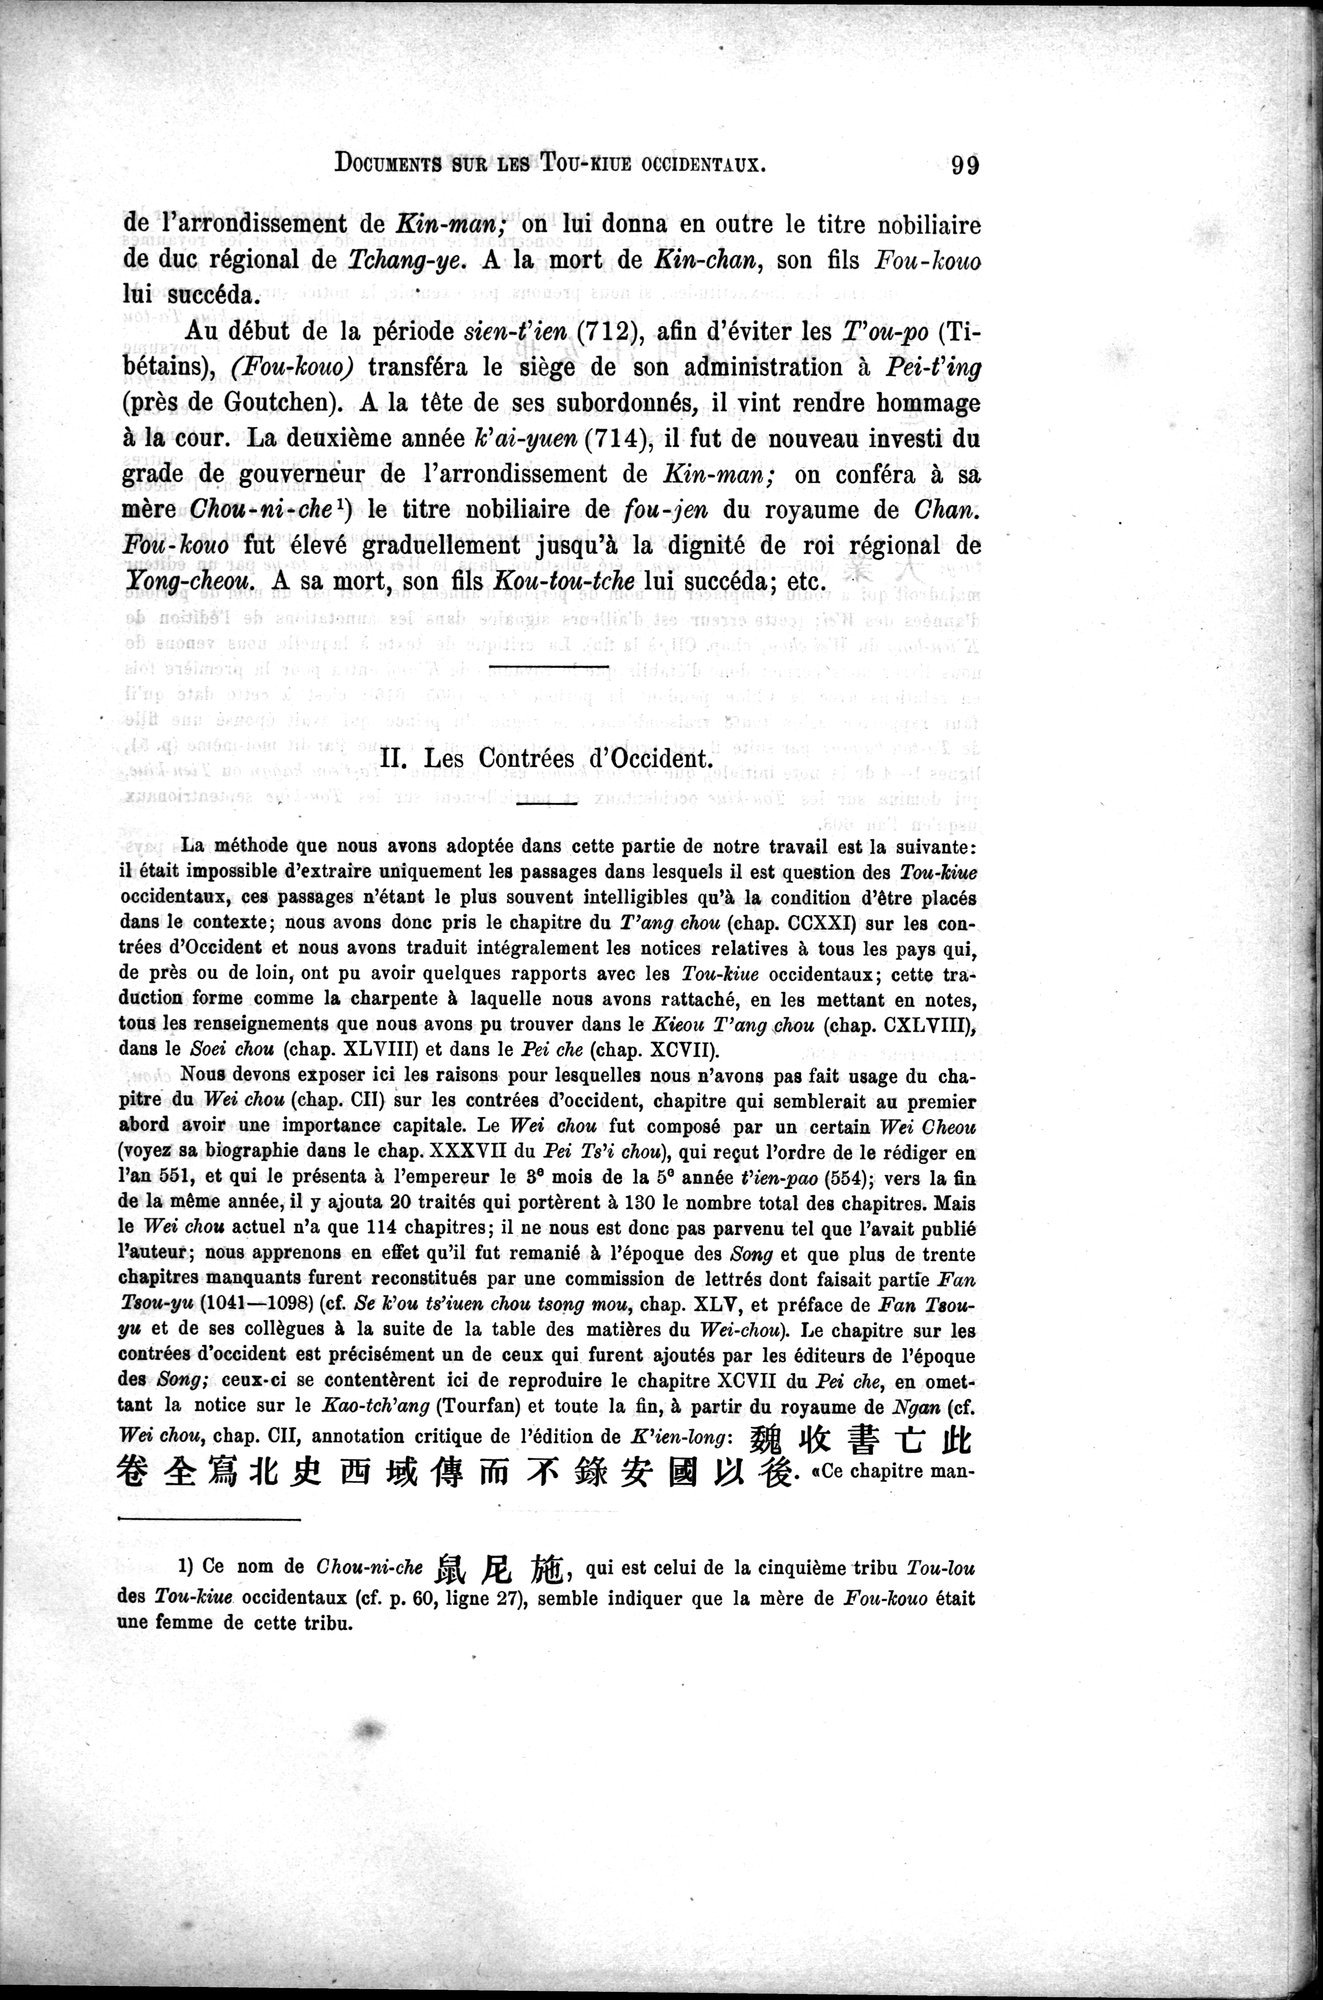 Documents sur les Tou-kiue (Turcs) occidentaux : vol.1 / Page 109 (Grayscale High Resolution Image)